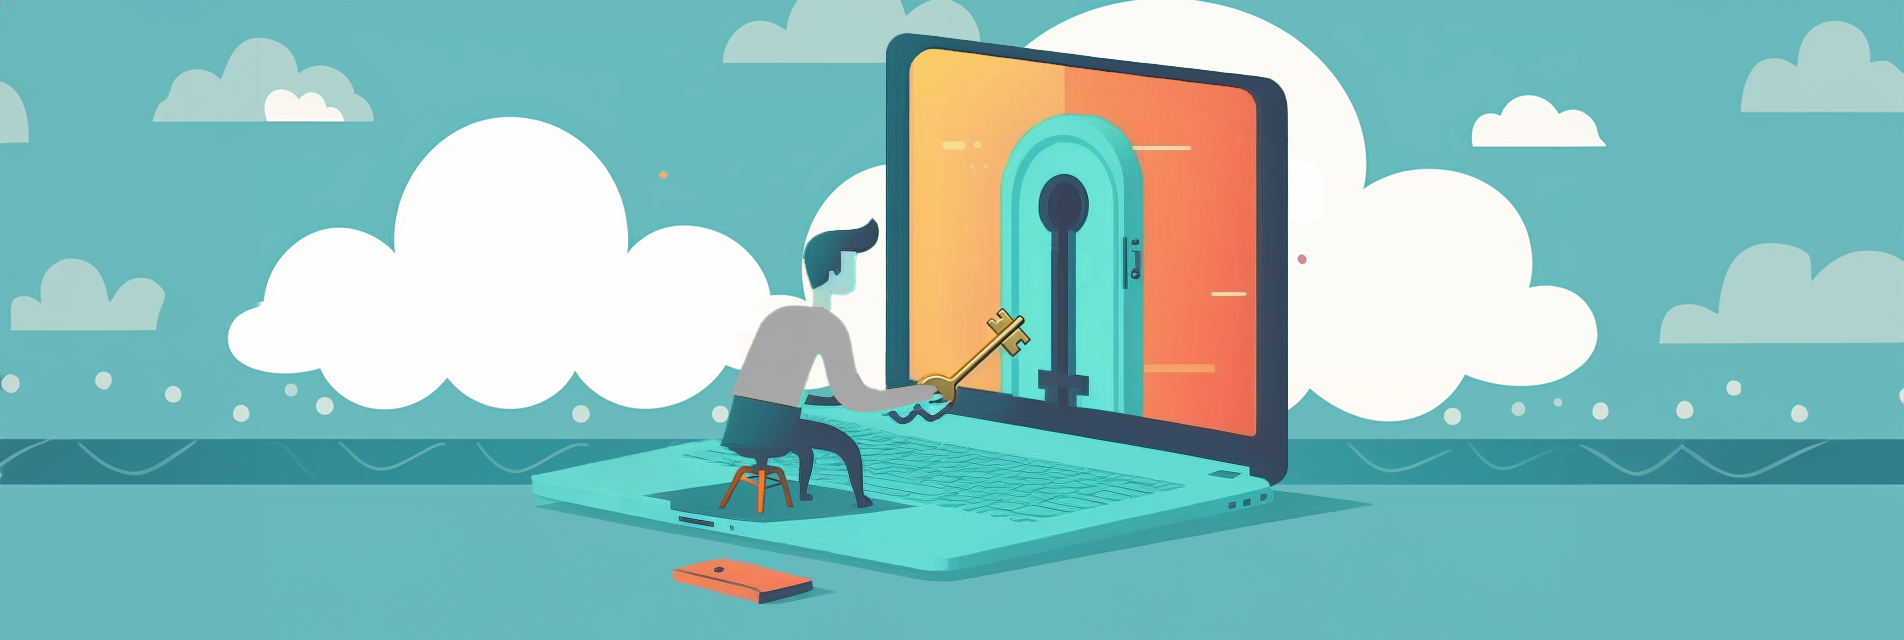 Illustration av en person med en stor nyckel i handen som ska låsa upp ett lås på sin laptop-skärm.